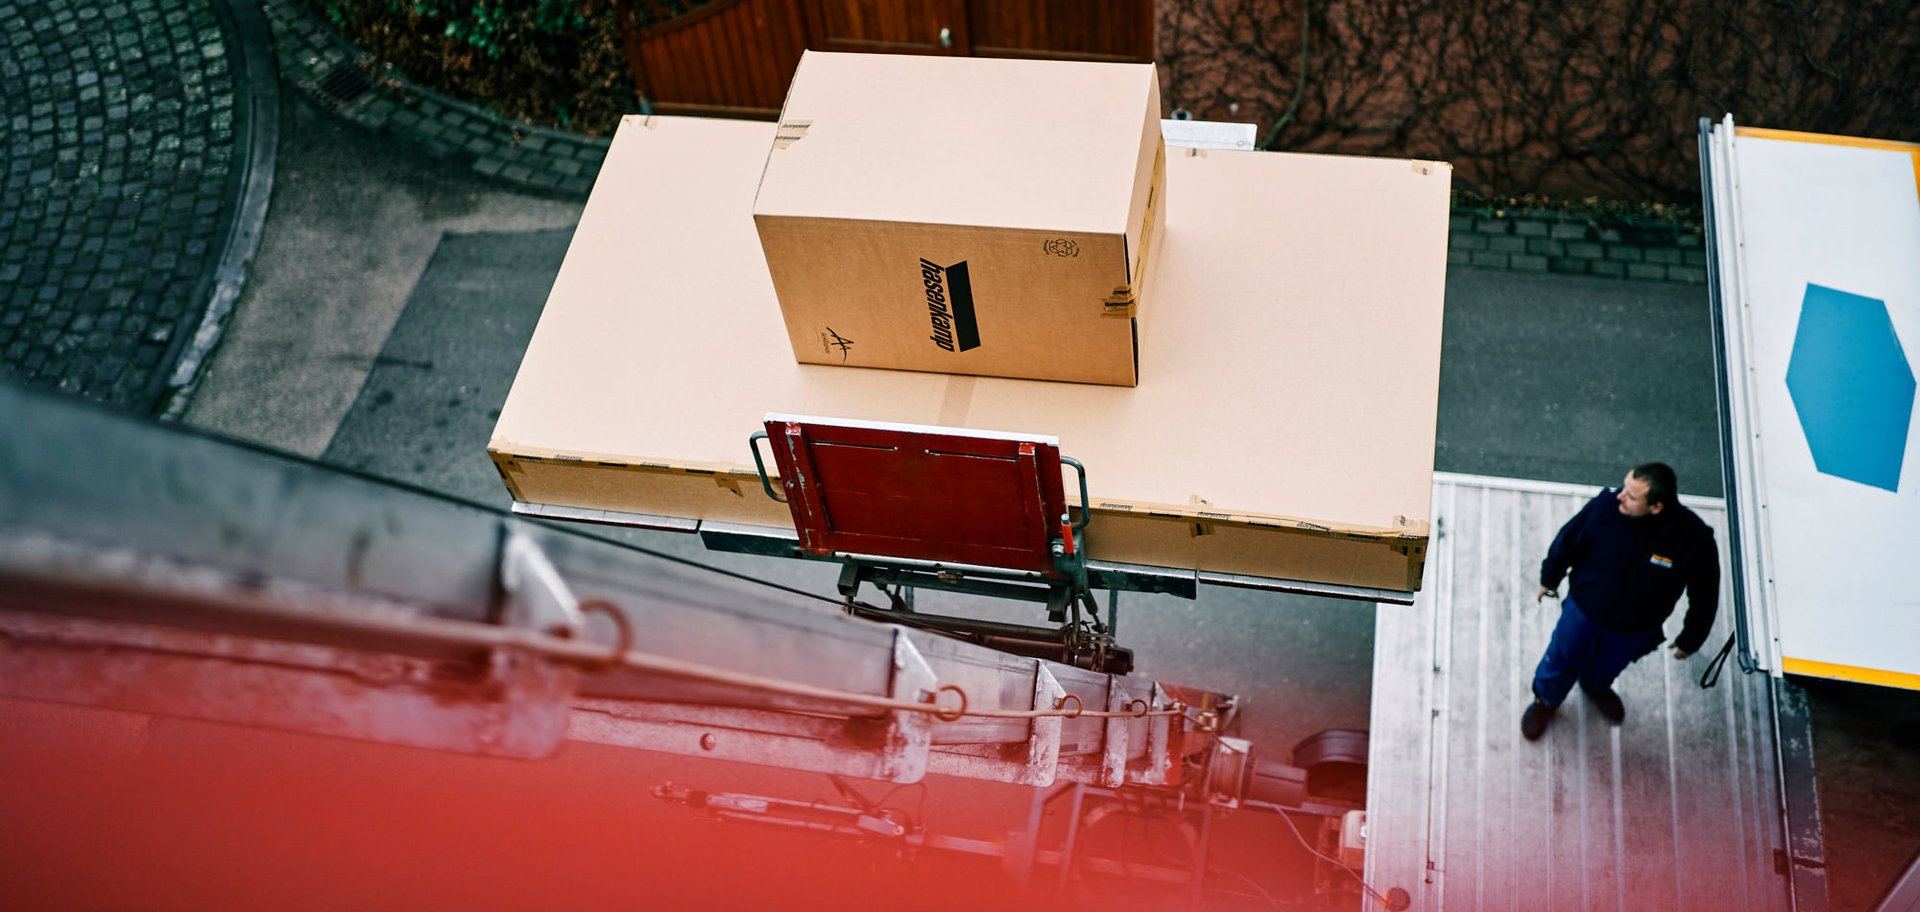 Ein Lastenaufzug zieht außen an einem Haus zwei Transportkisten mit hasenkamp-Aufdruck nach oben.